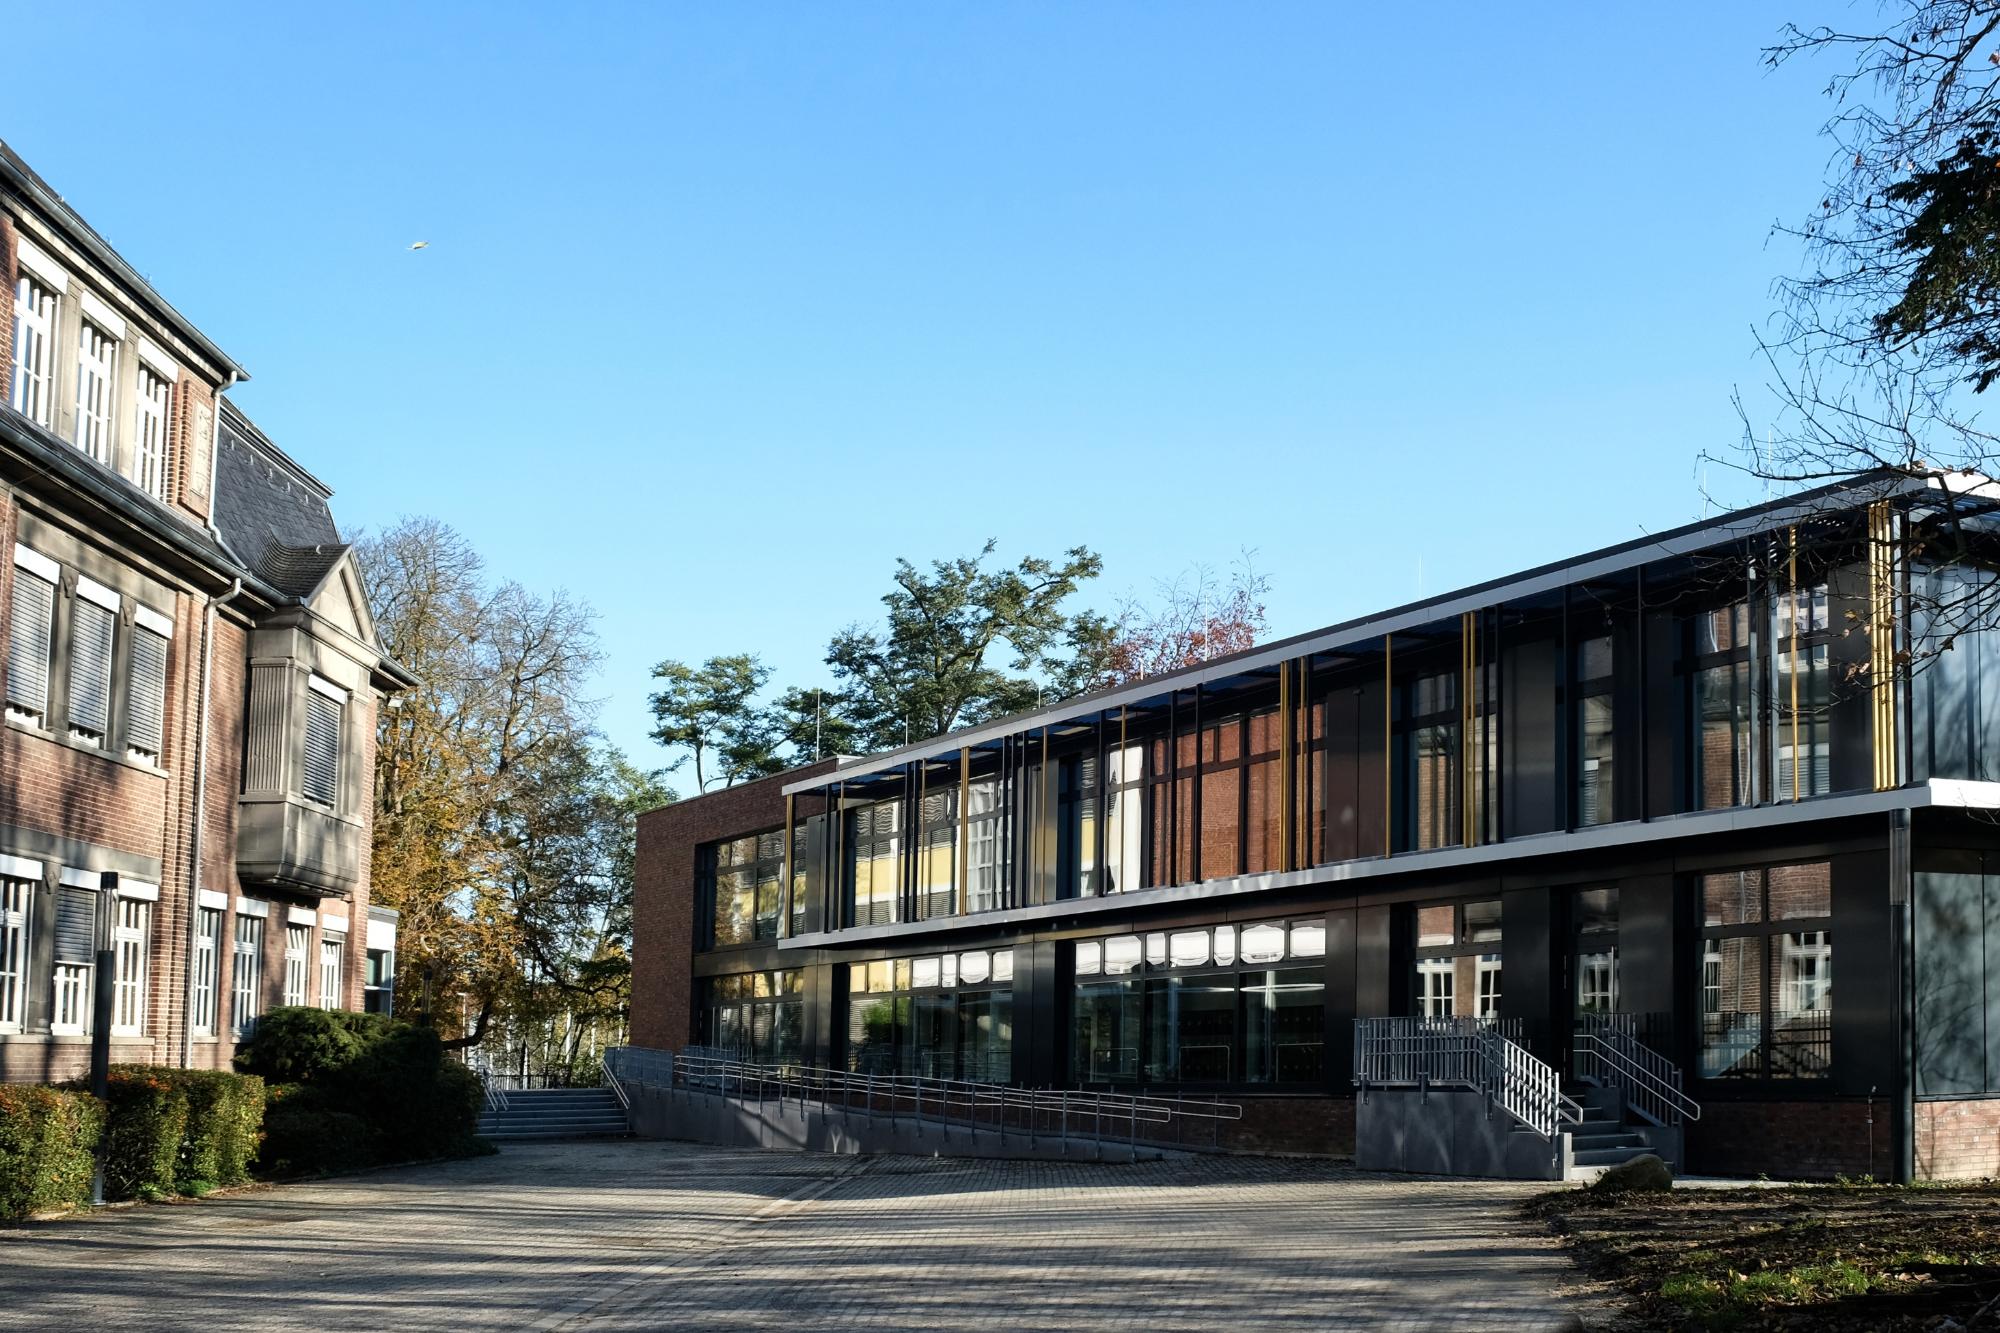 Bischöfliches Gymnasium Sankt Ursula Geilenkirchen